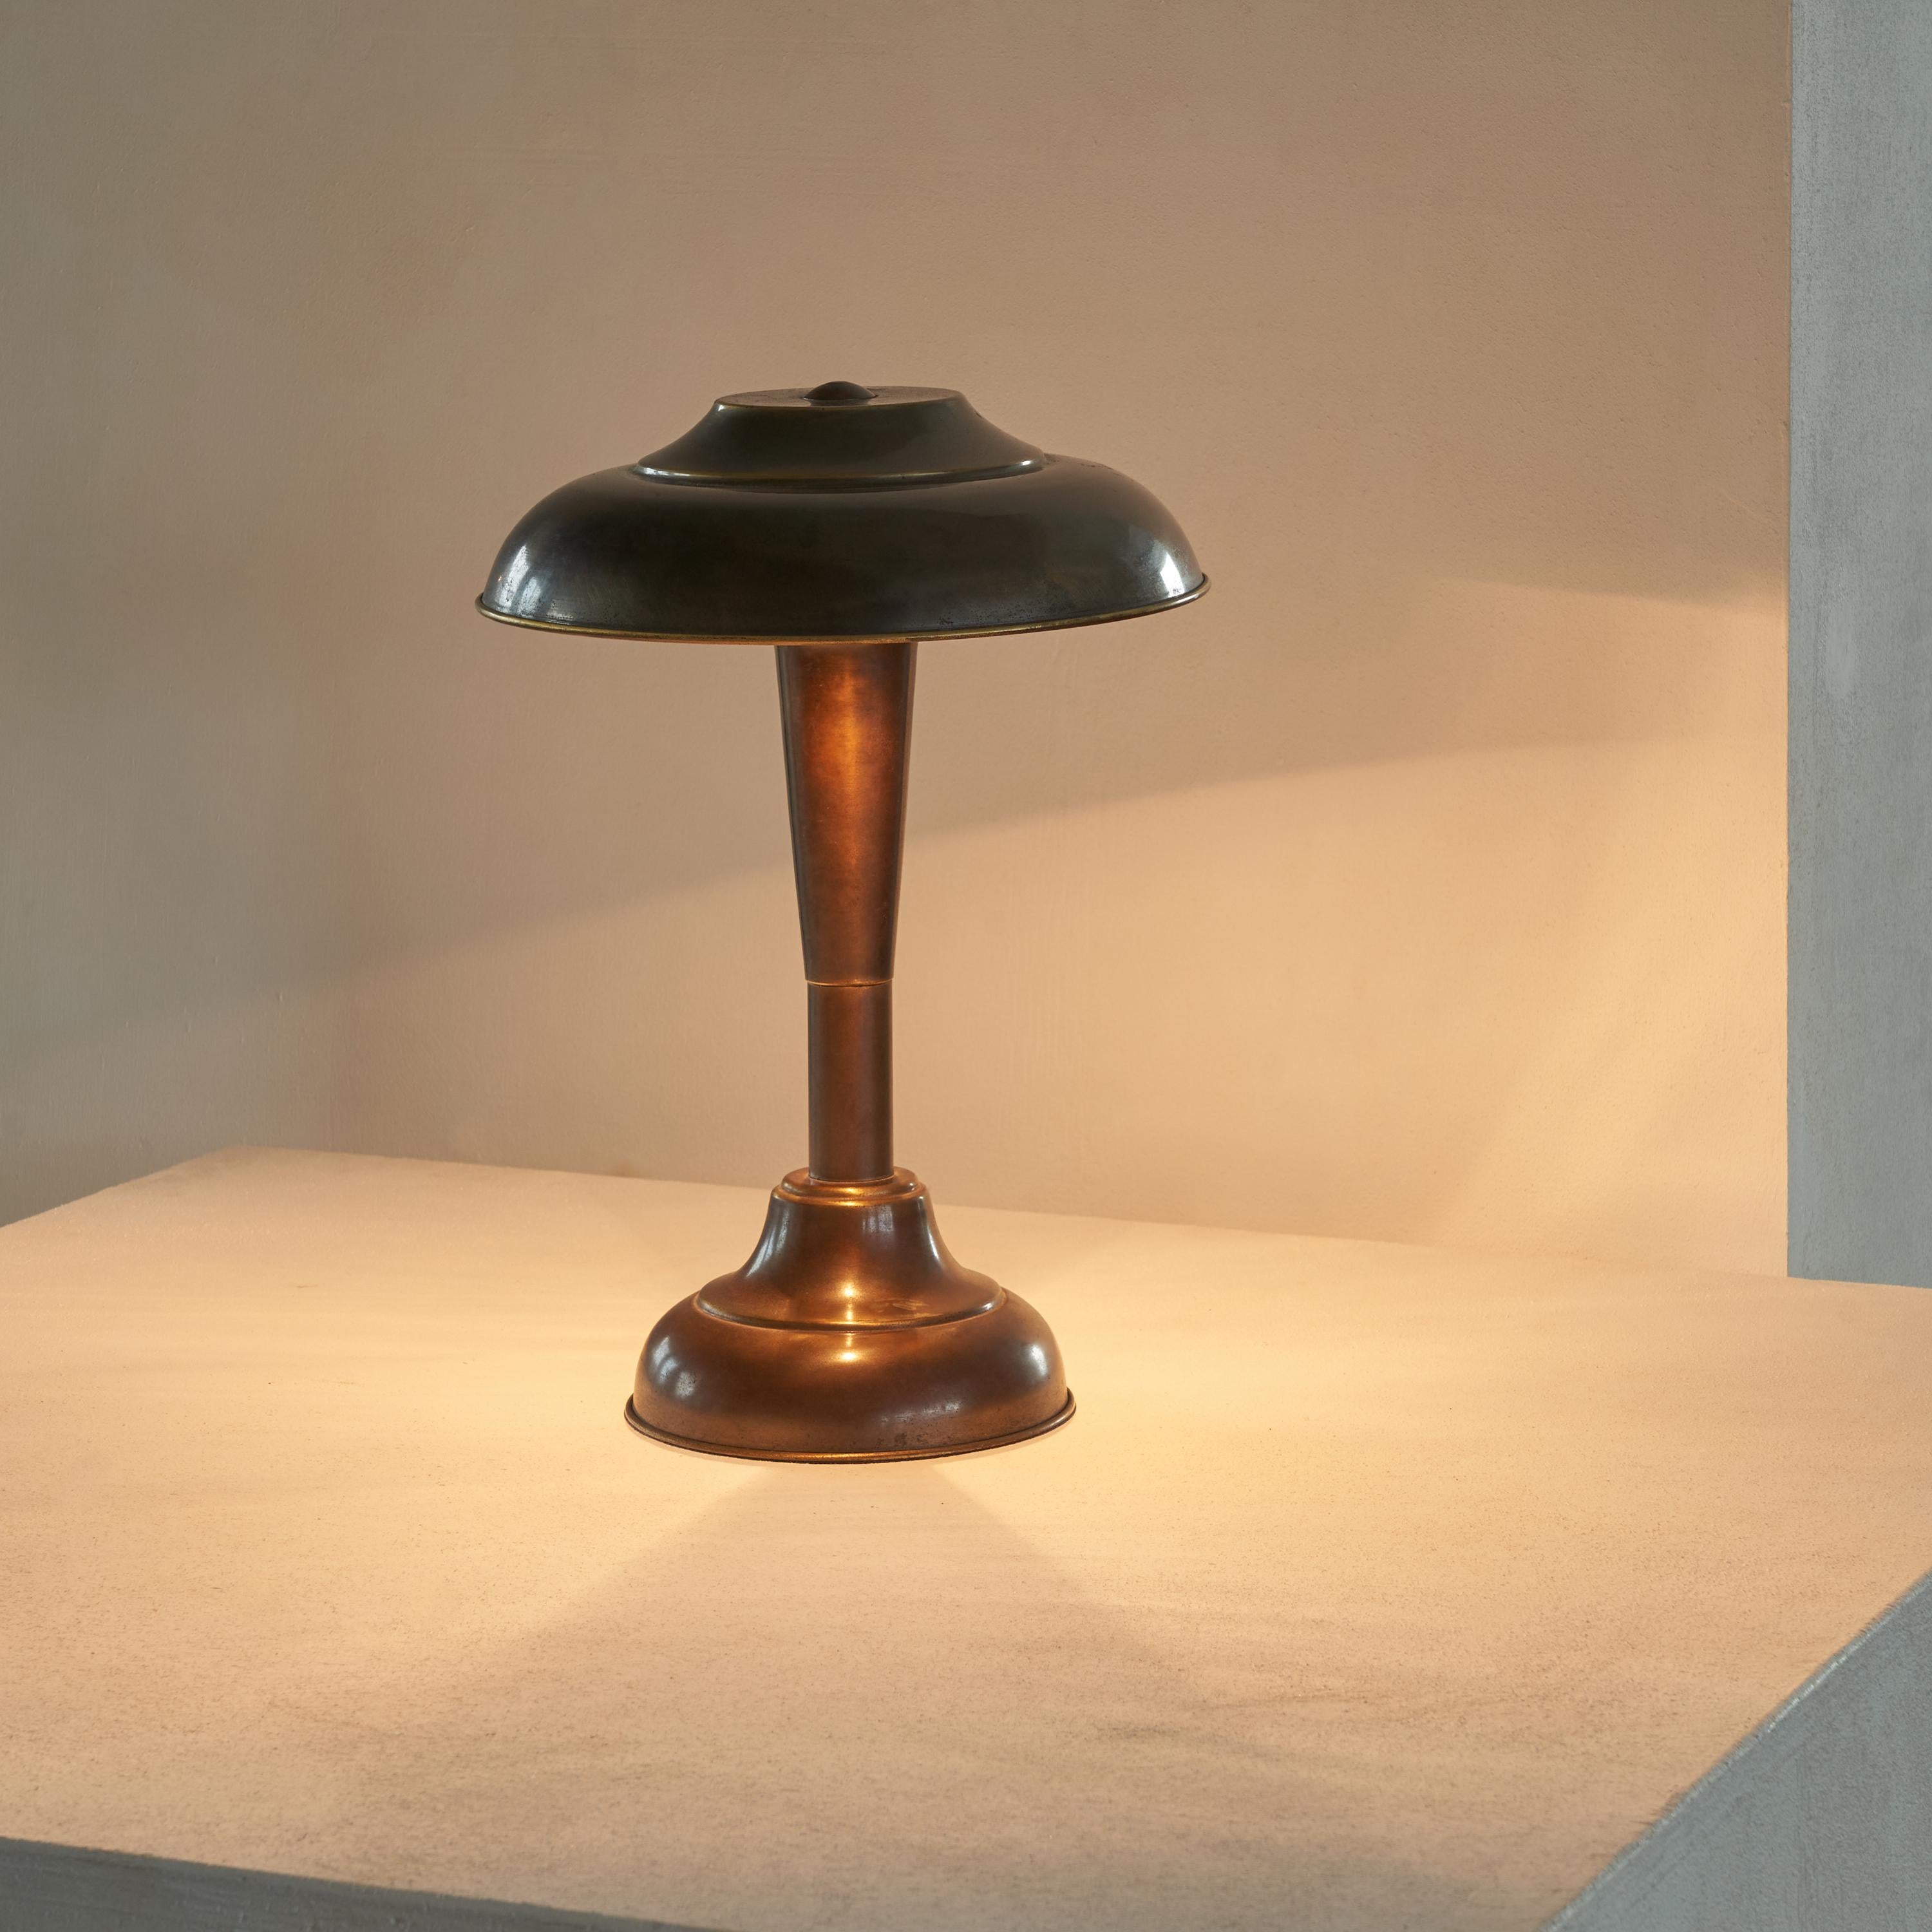 Lampe de table Art Déco en laiton patiné années 1950.

Il s'agit d'une lampe de table merveilleusement patinée dans un style art déco distinct, probablement fabriquée dans les années 1950. Un design très riche et élégant, avec de bonnes